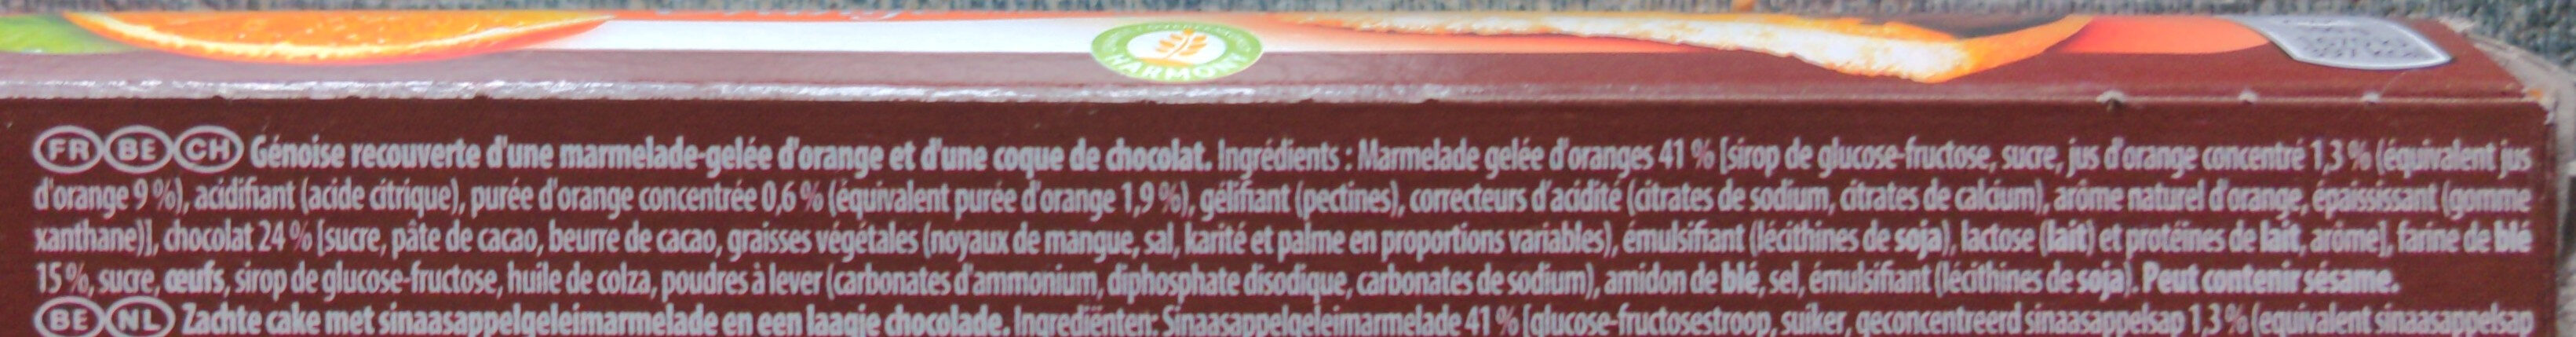 Pim's L'Original Orange - Ingredientes - fr